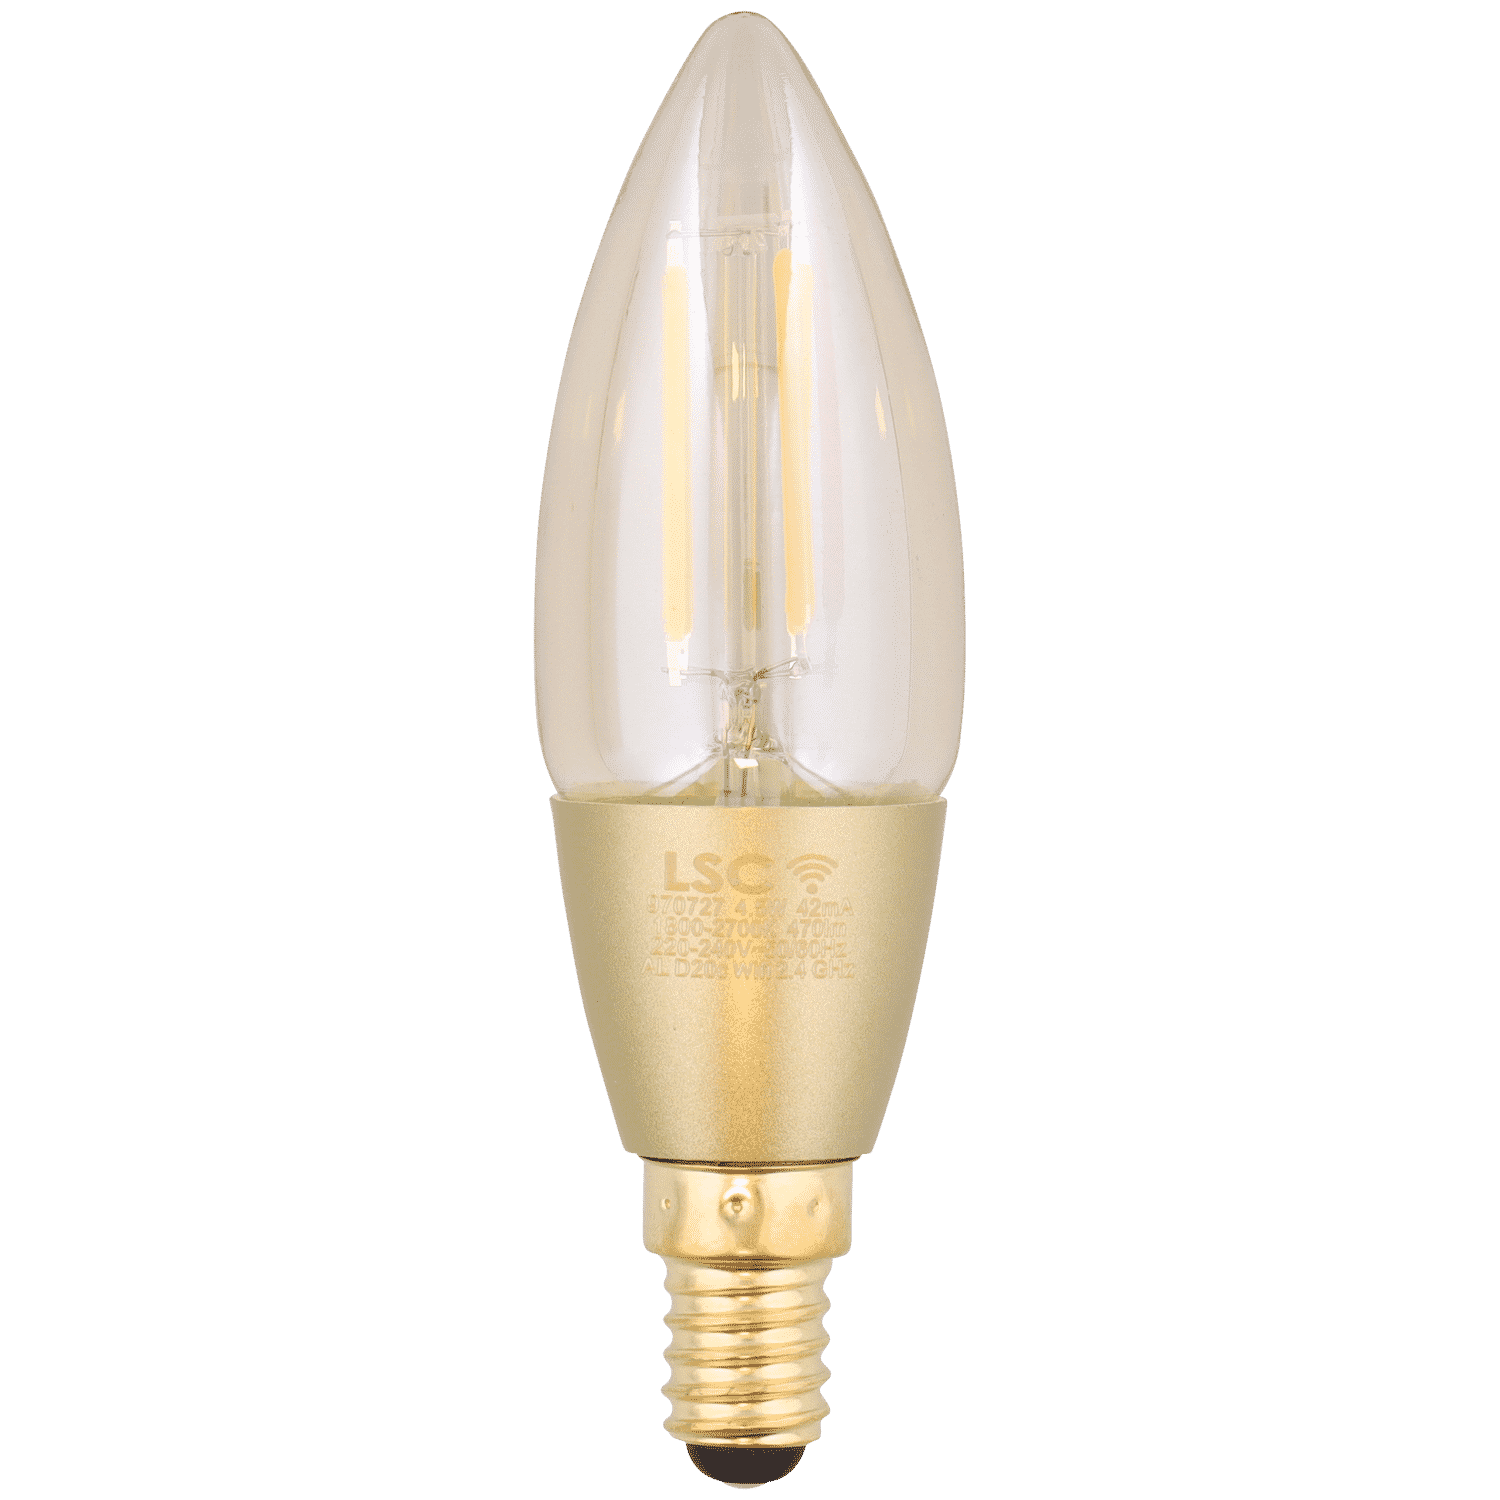 Lampe à filament LSC Smart Connect